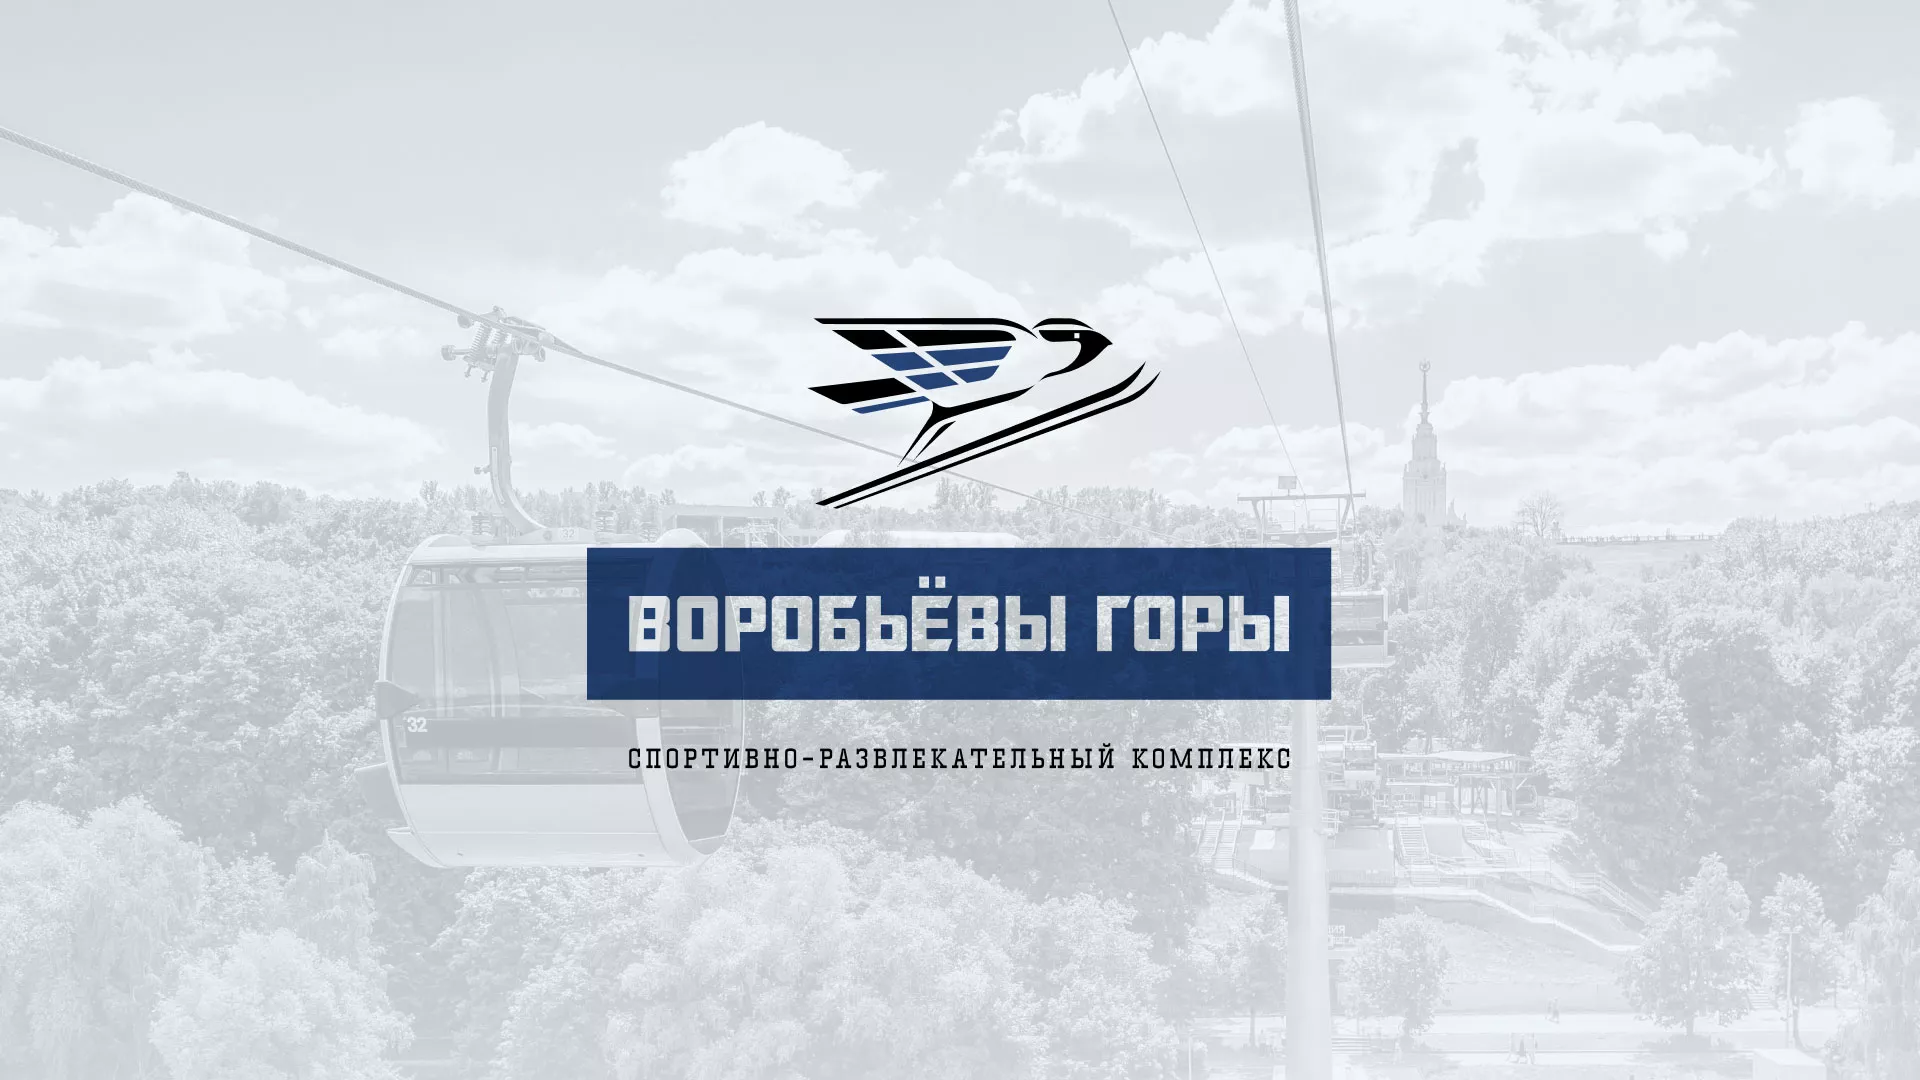 Разработка сайта в Казани для спортивно-развлекательного комплекса «Воробьёвы горы»